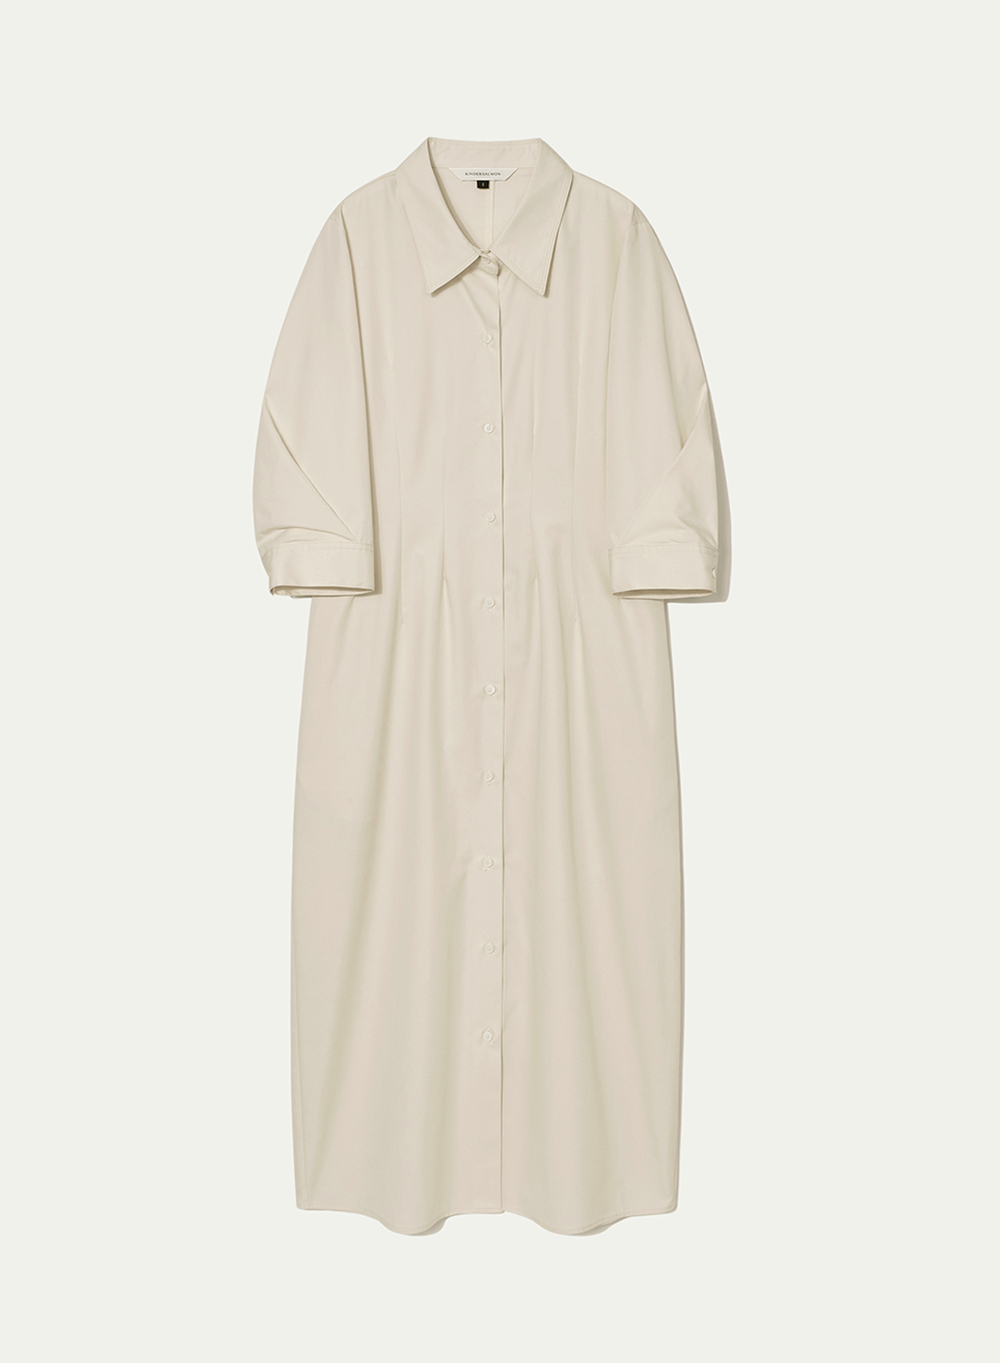 [ESSENTIAL] Original Silhouette Shirt Dress Cream